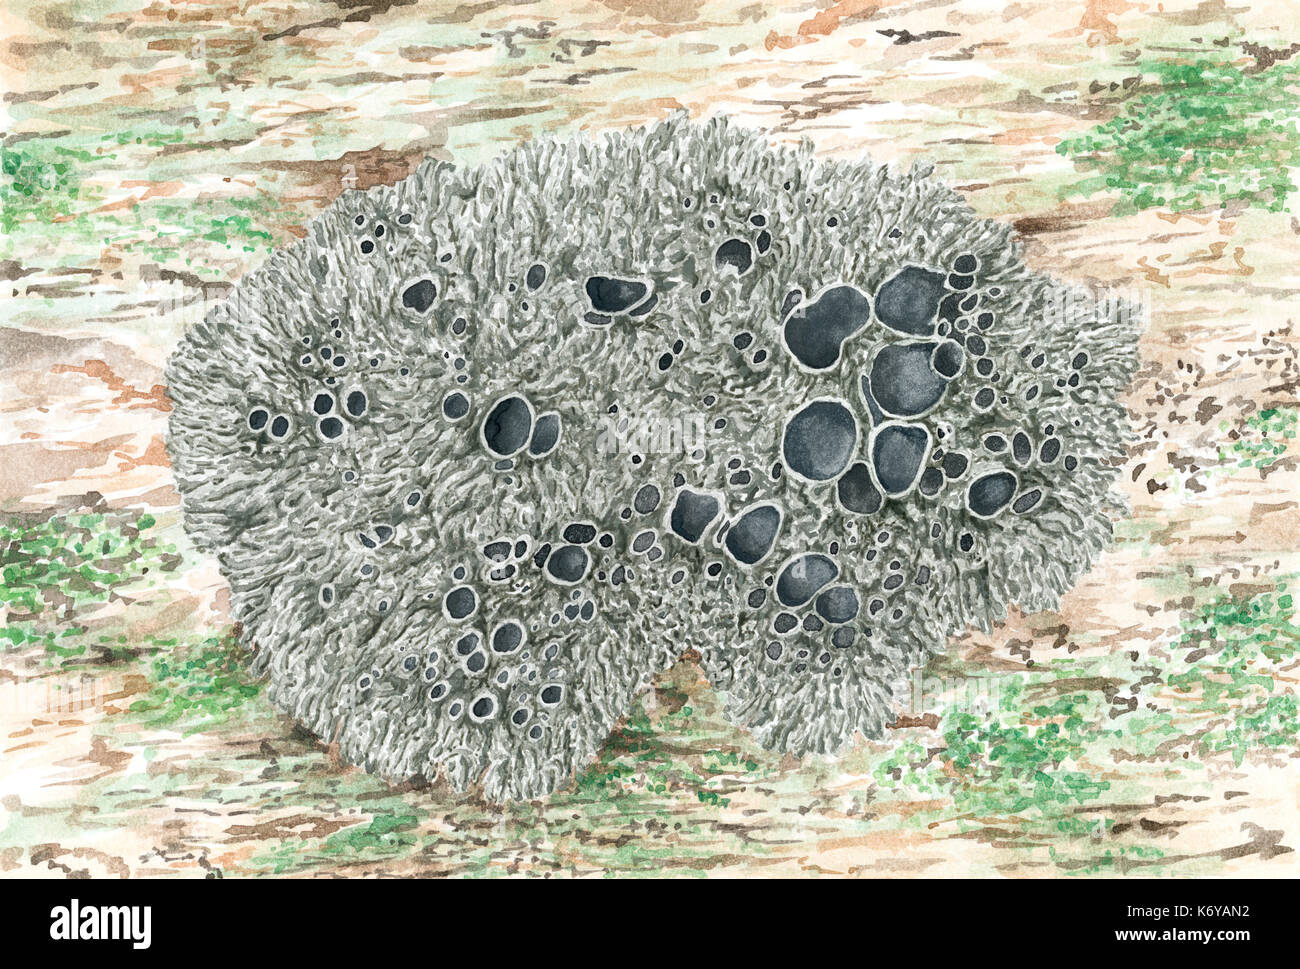 Disegno di un foliose lichen Xanthoparmelia conspersa (Pepati rock-shield). Acquerello su carta ruvida. Foto Stock